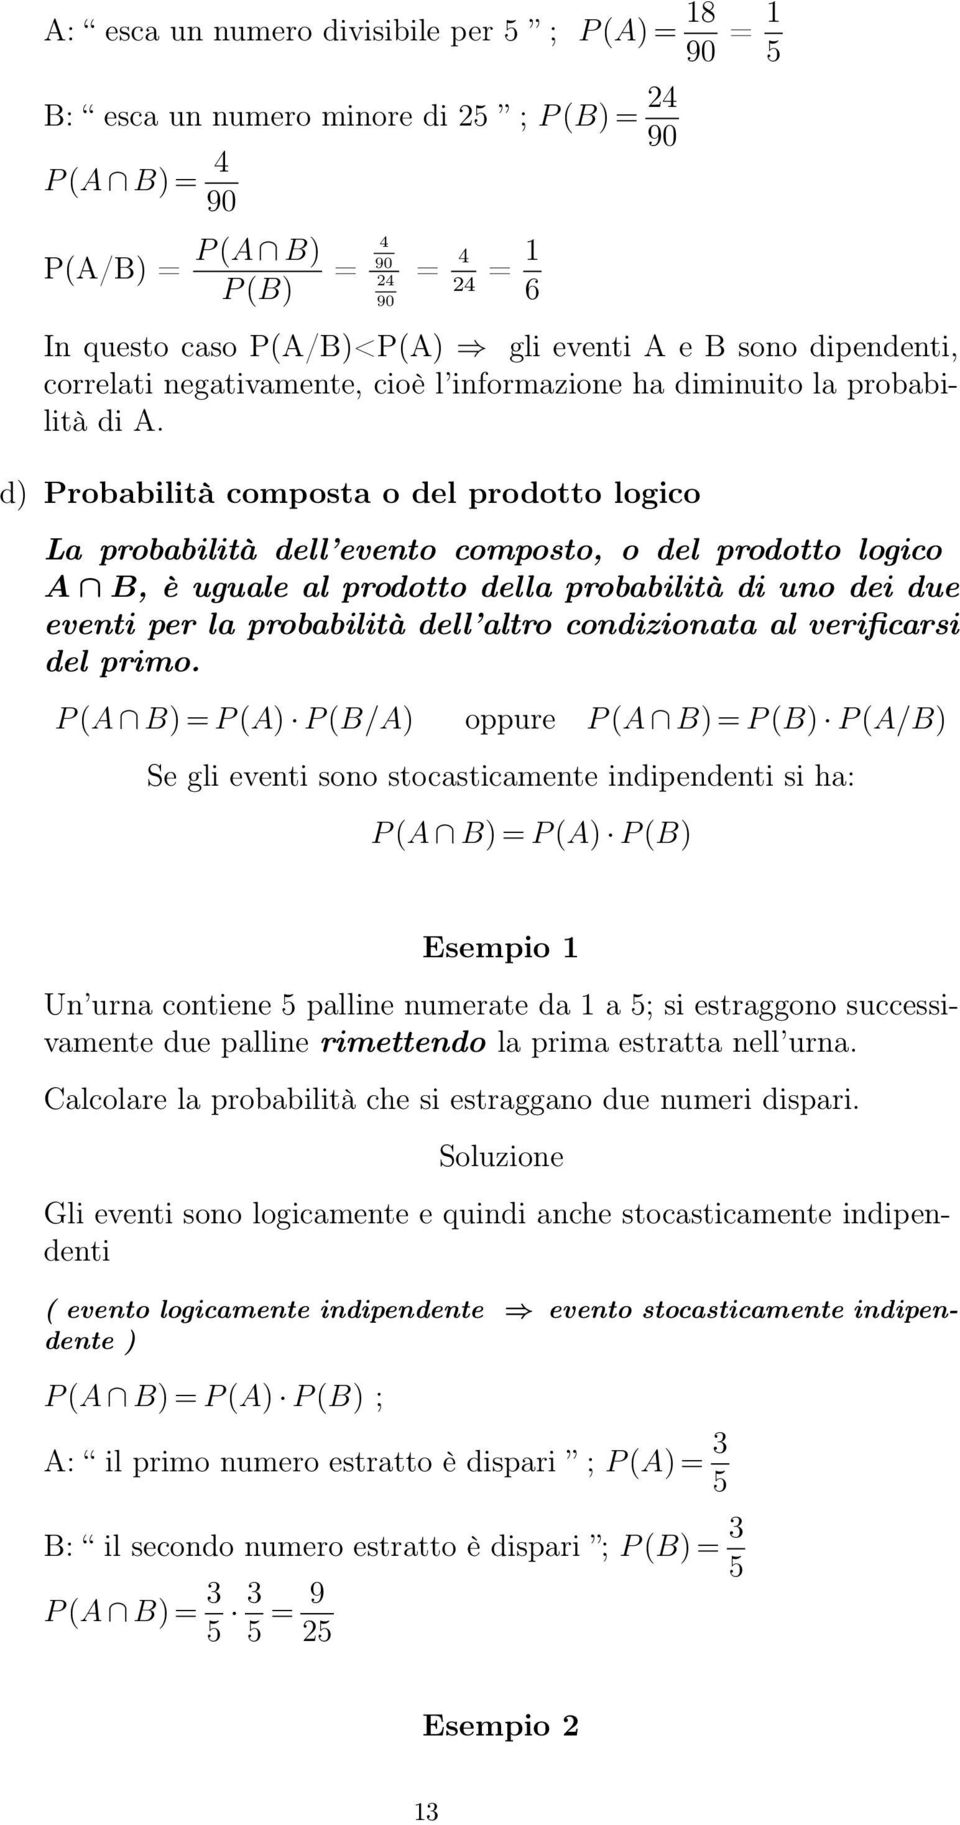 d) Probabilità composta o del prodotto logico La probabilità dell evento composto, o del prodotto logico A B, è uguale al prodotto della probabilità di uno dei due eventi per la probabilità dell